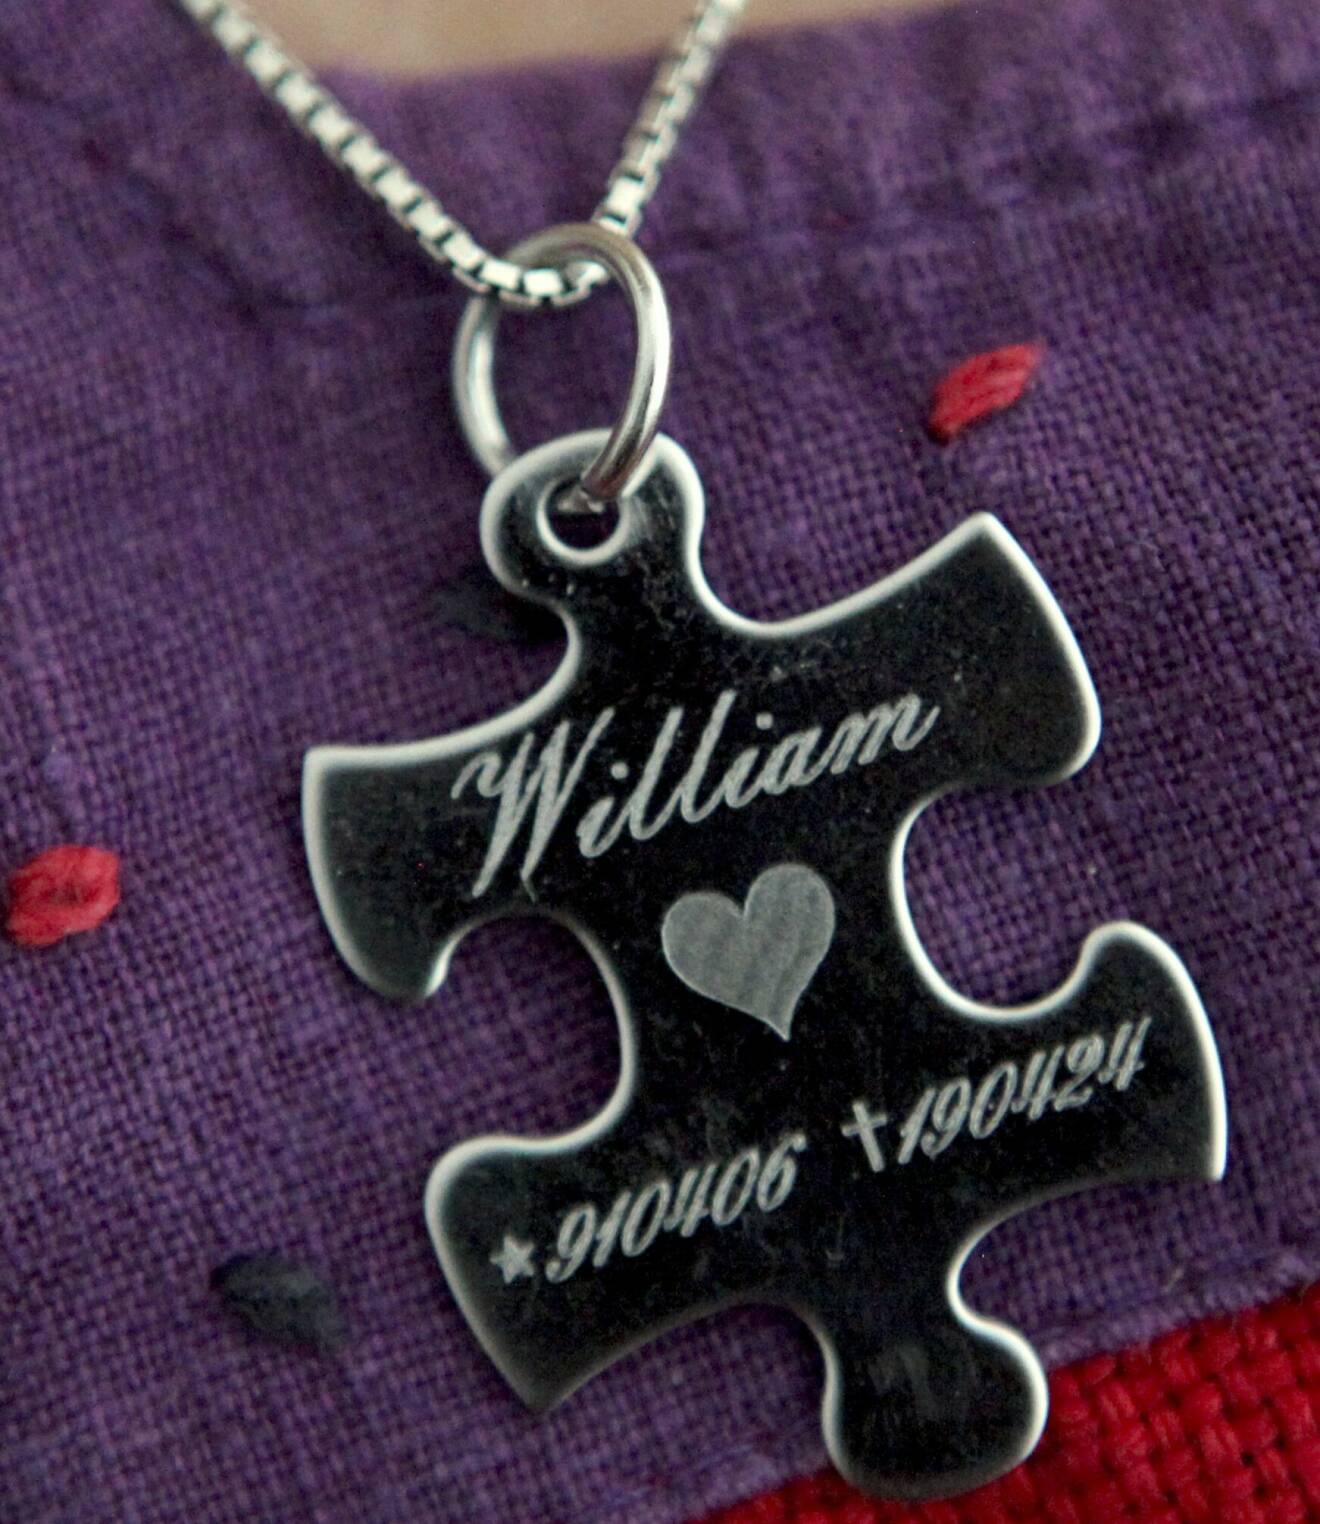 Runt halsen bär Susanne ett smycket som ser ut som en pusselbit och där det står William och hans personnummer.